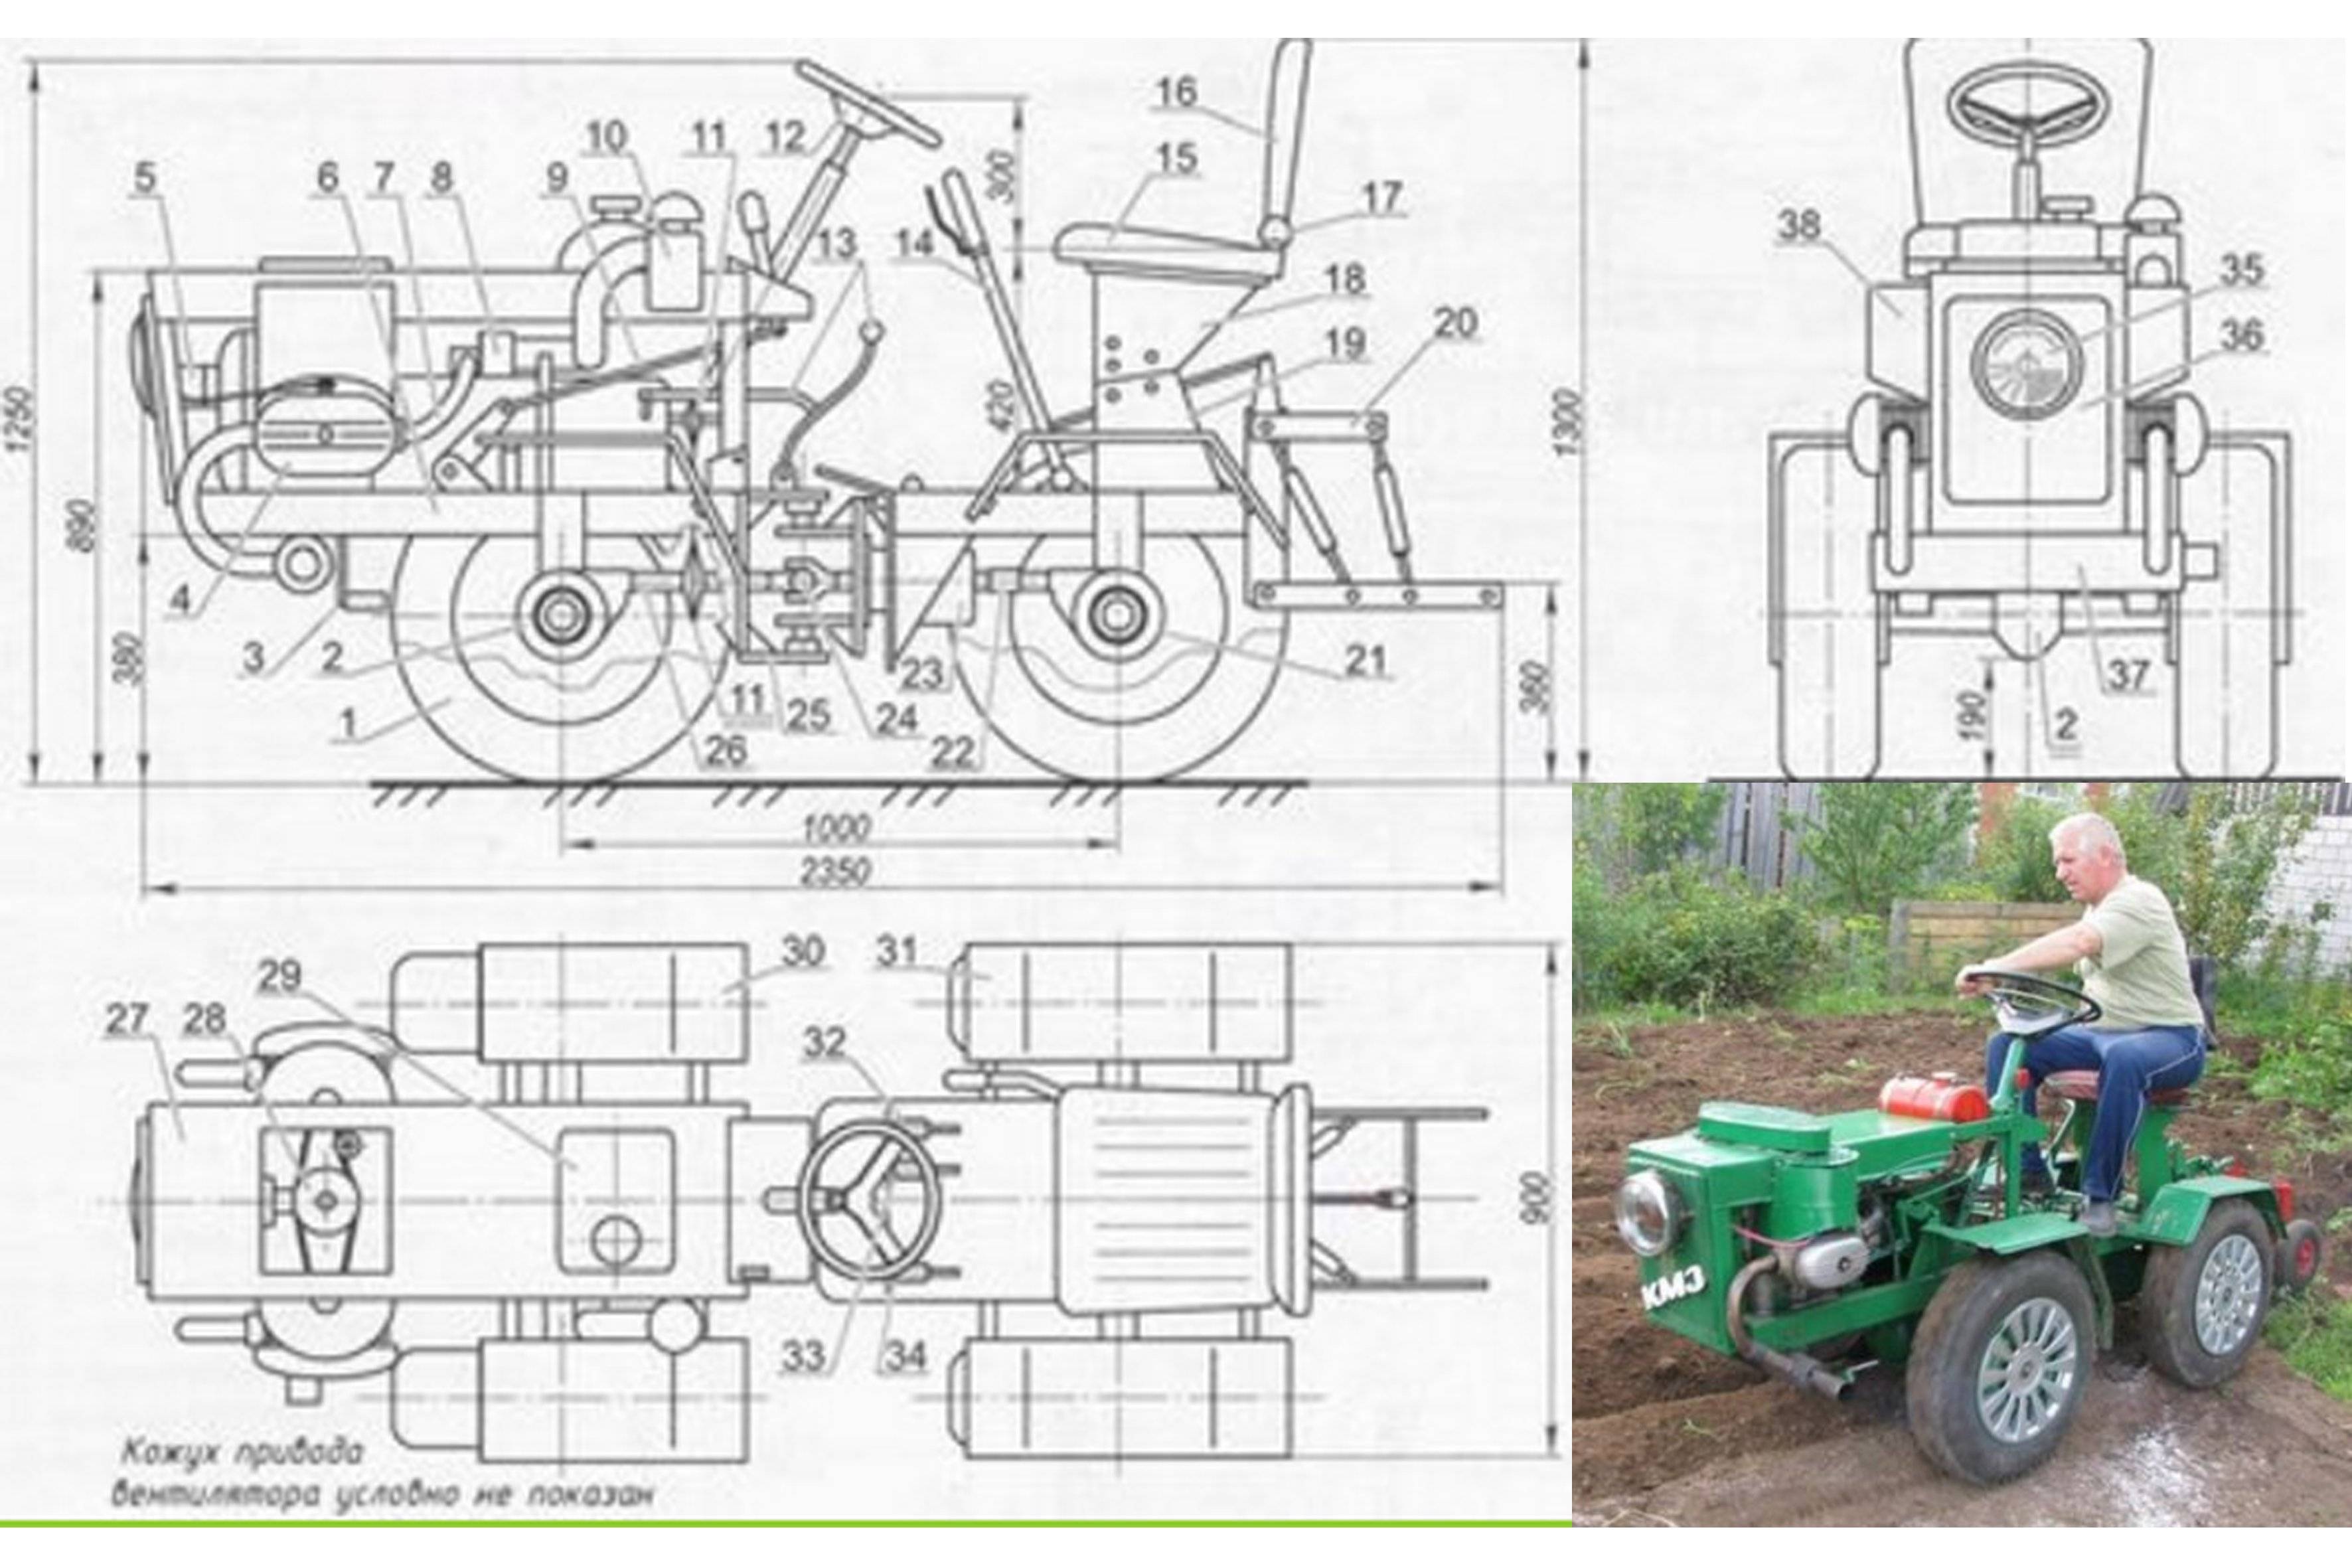 Минитрактор своими руками — чертежи, схемы и проекты самодельных сельскохозяйственных машин и механизмов (120 фото)